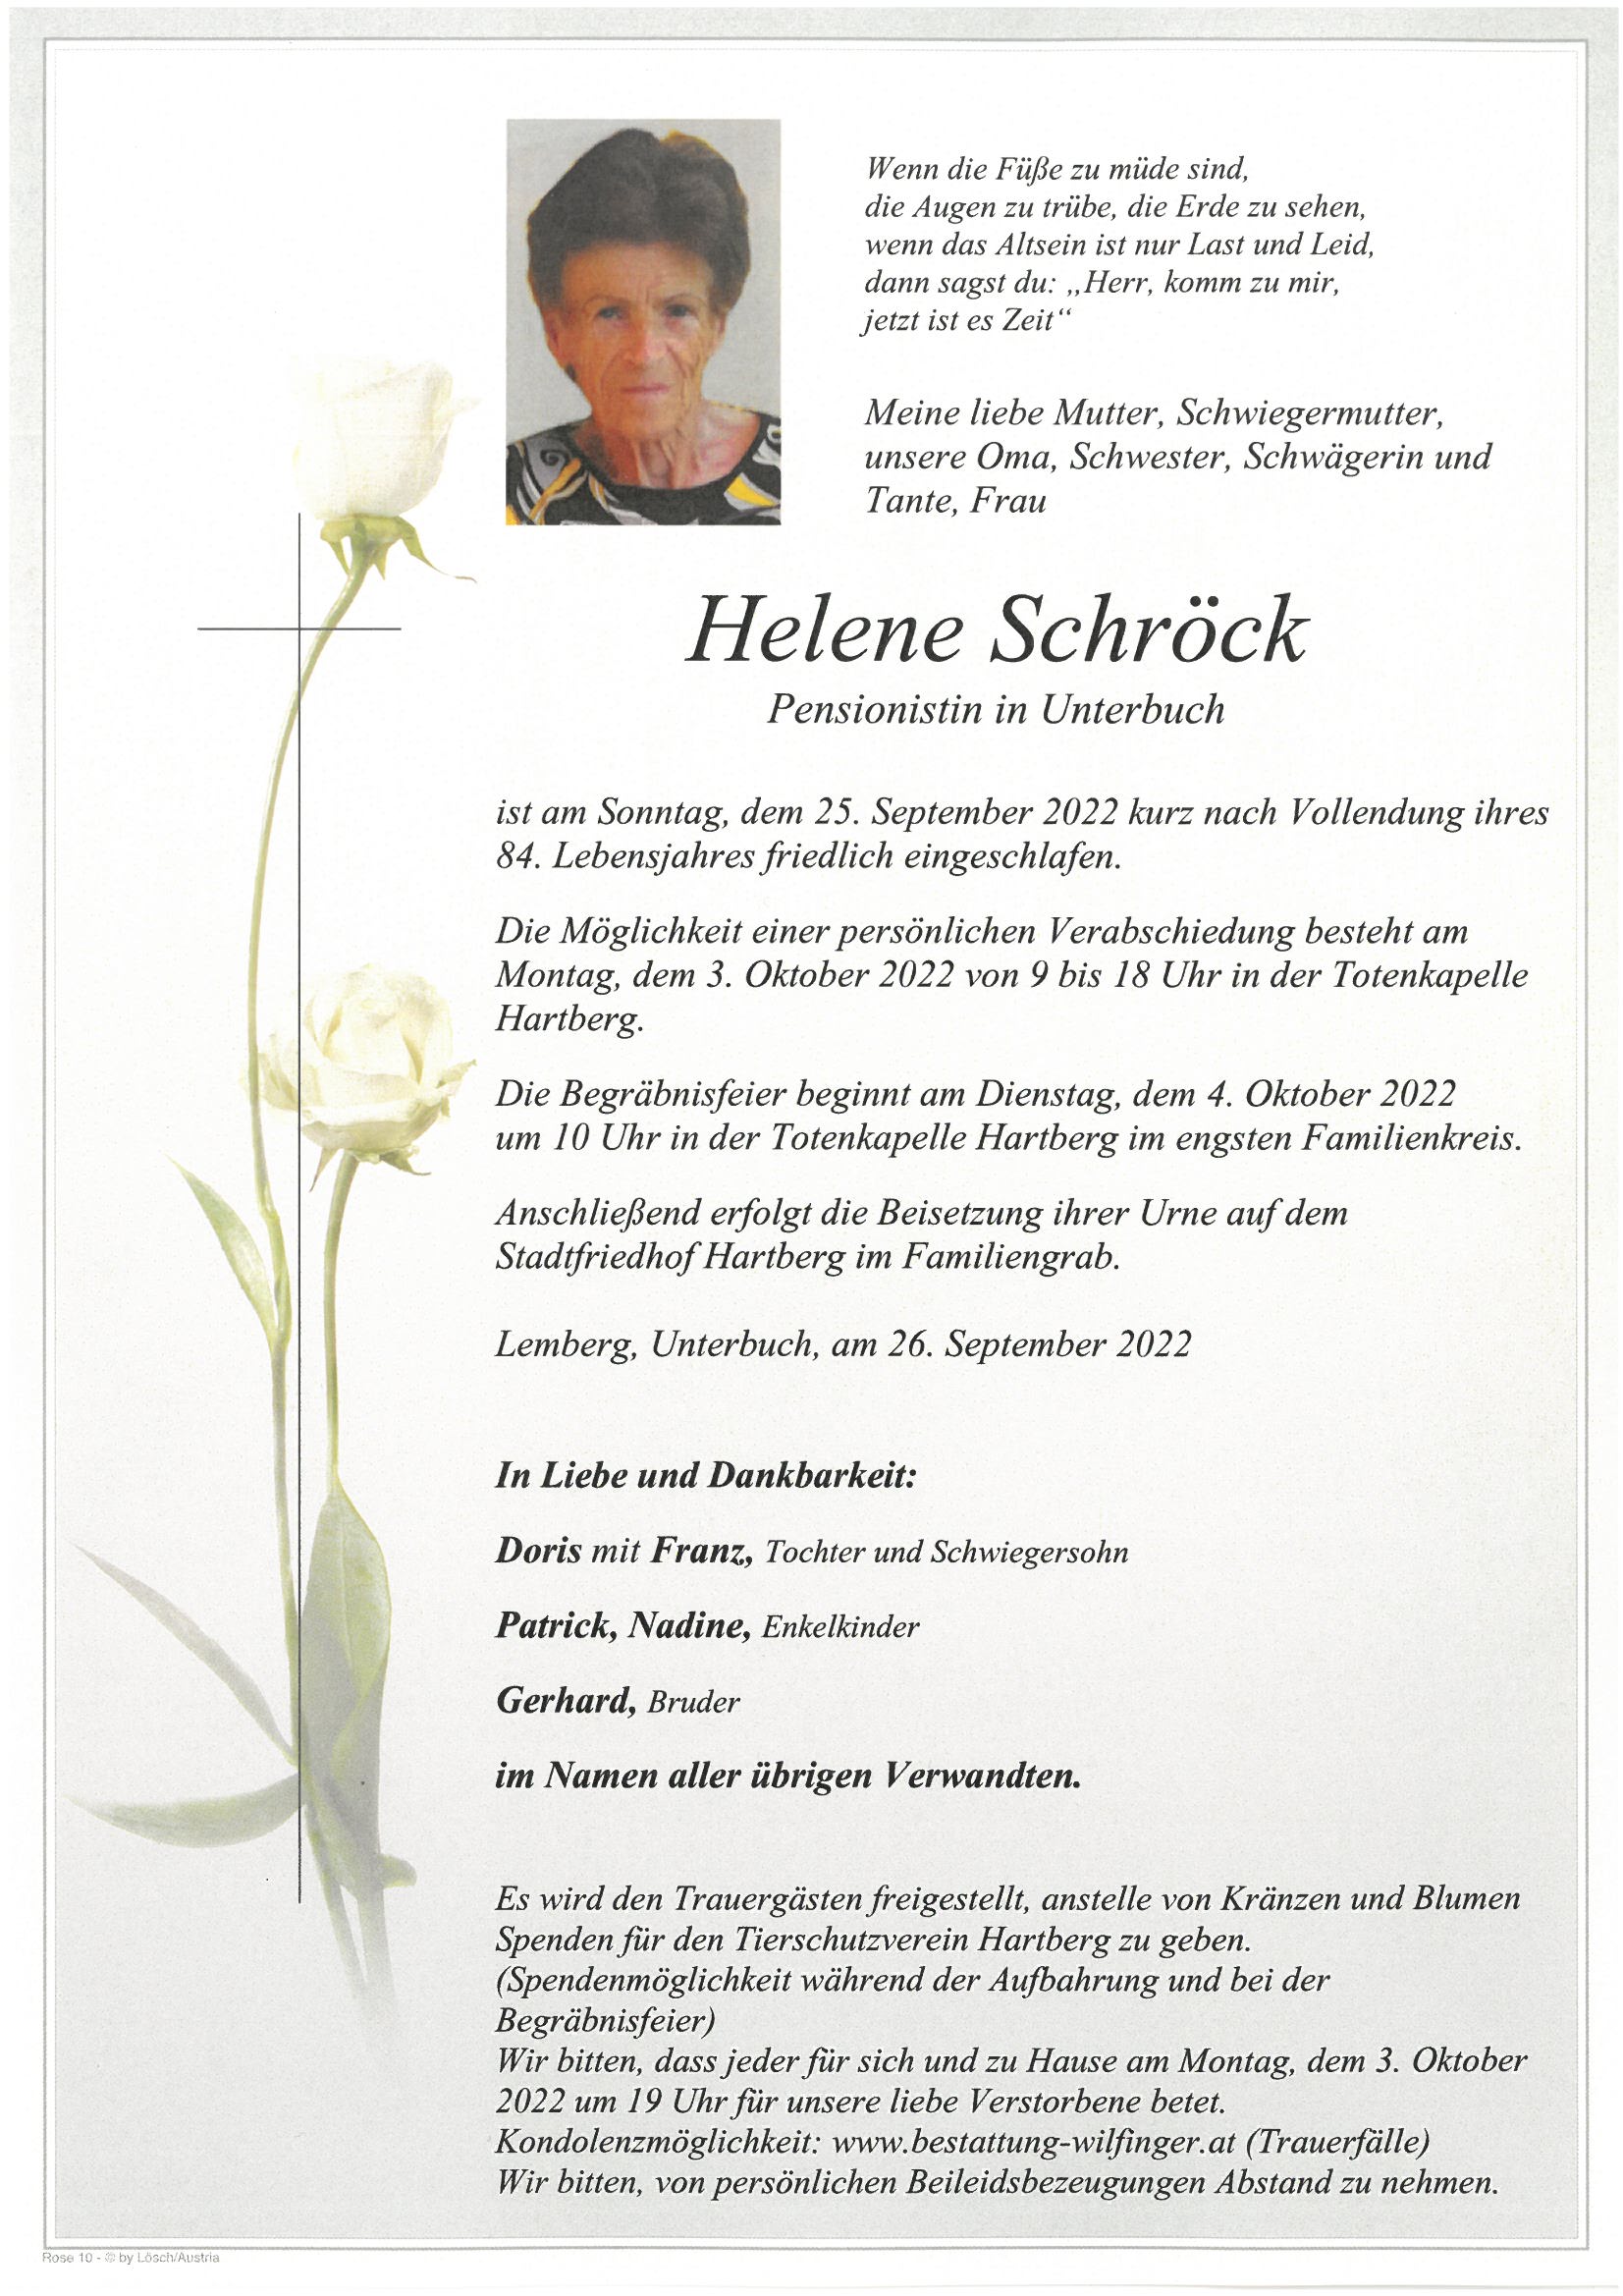 Helene Schröck, Unterbuch